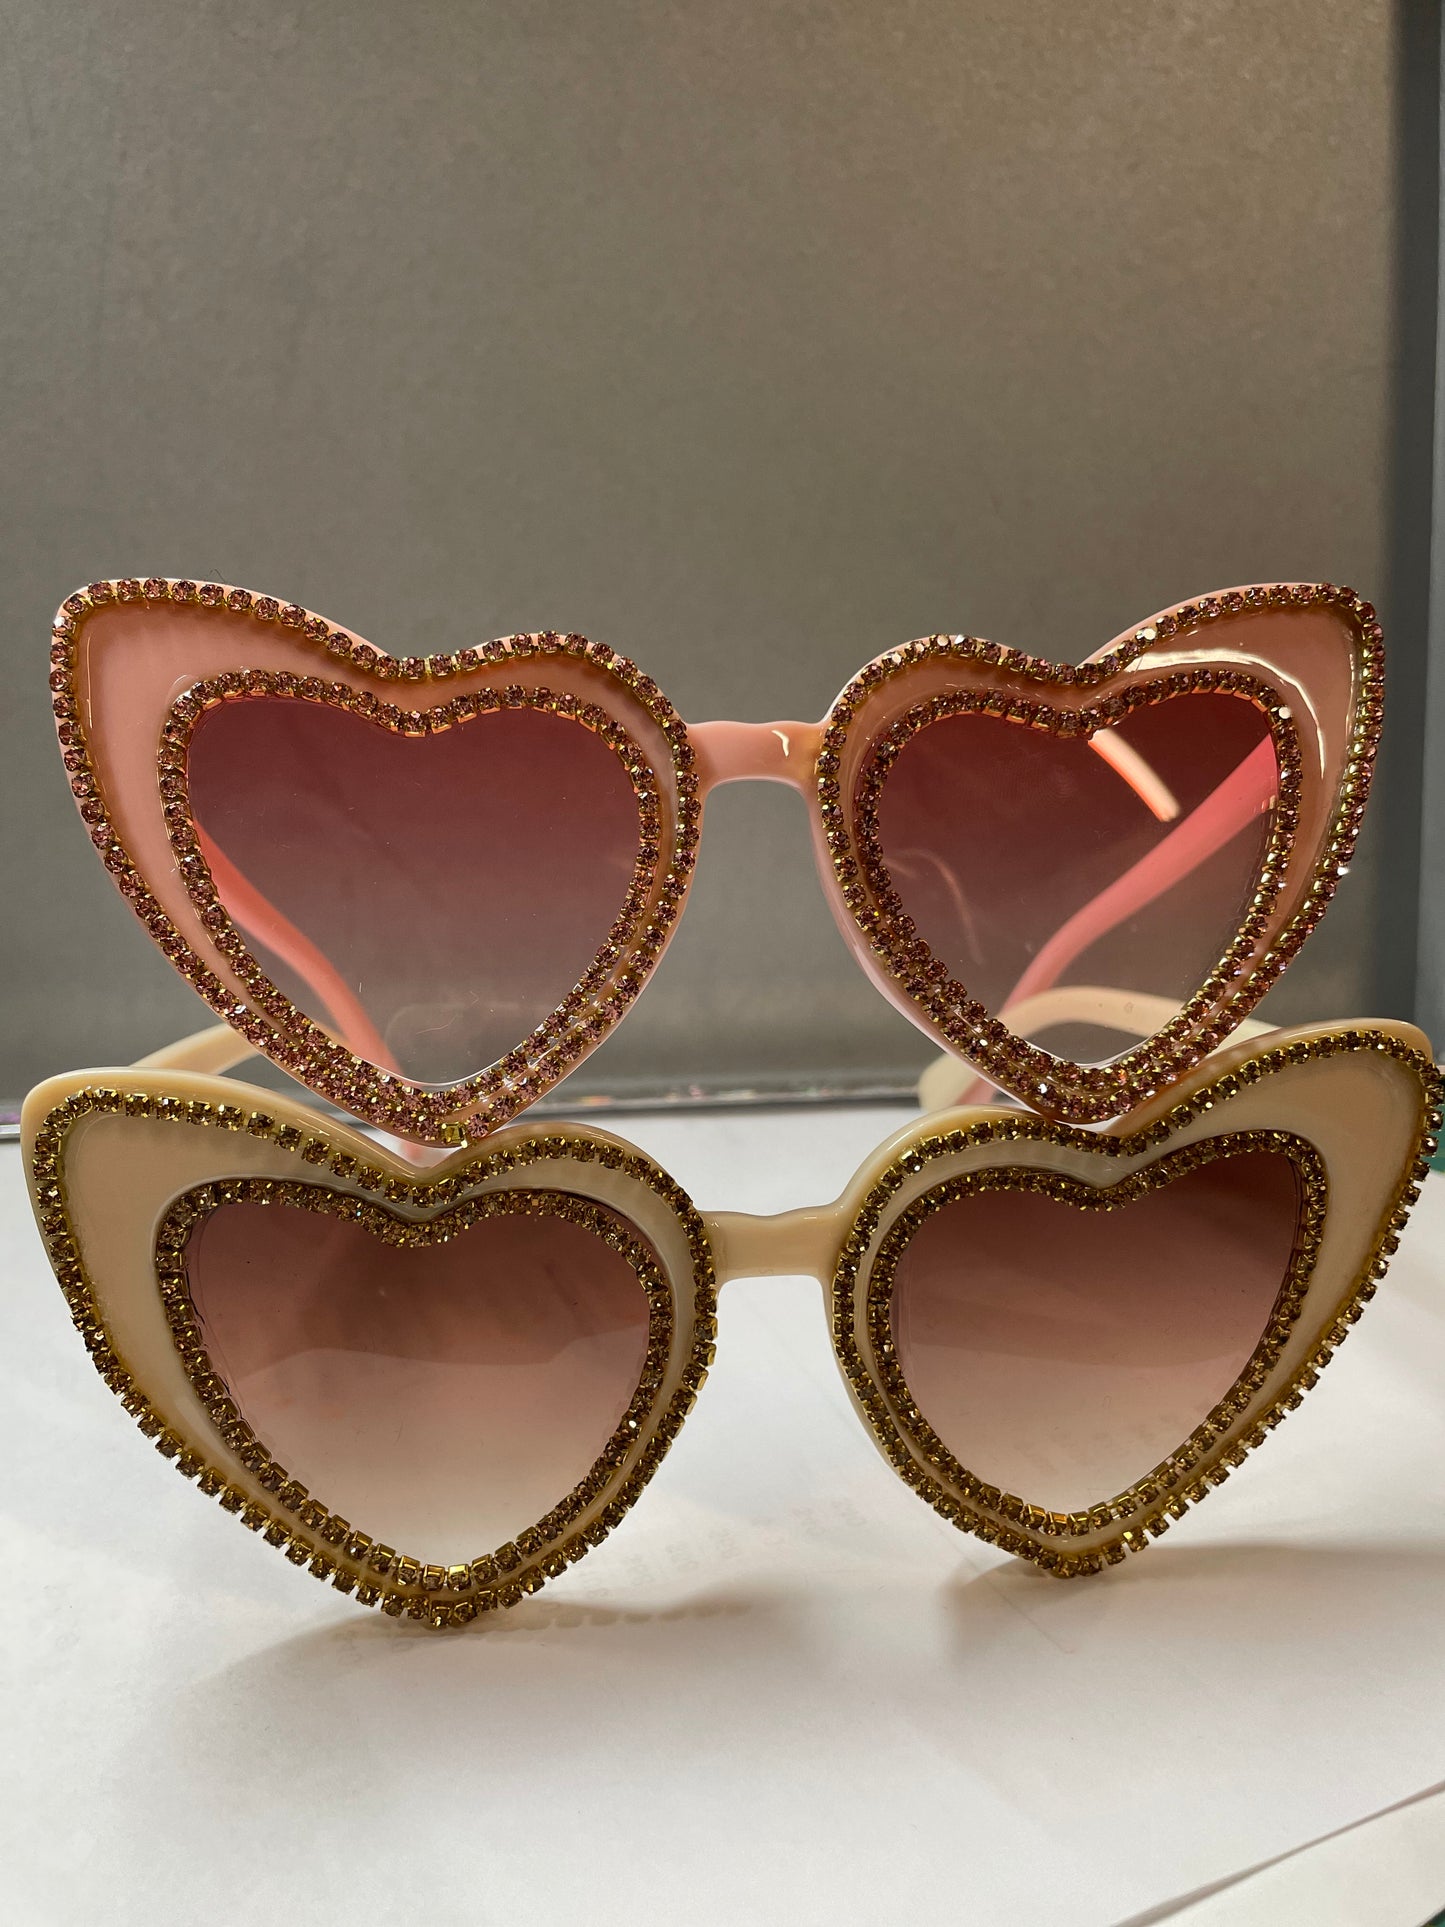 Heart Glasses